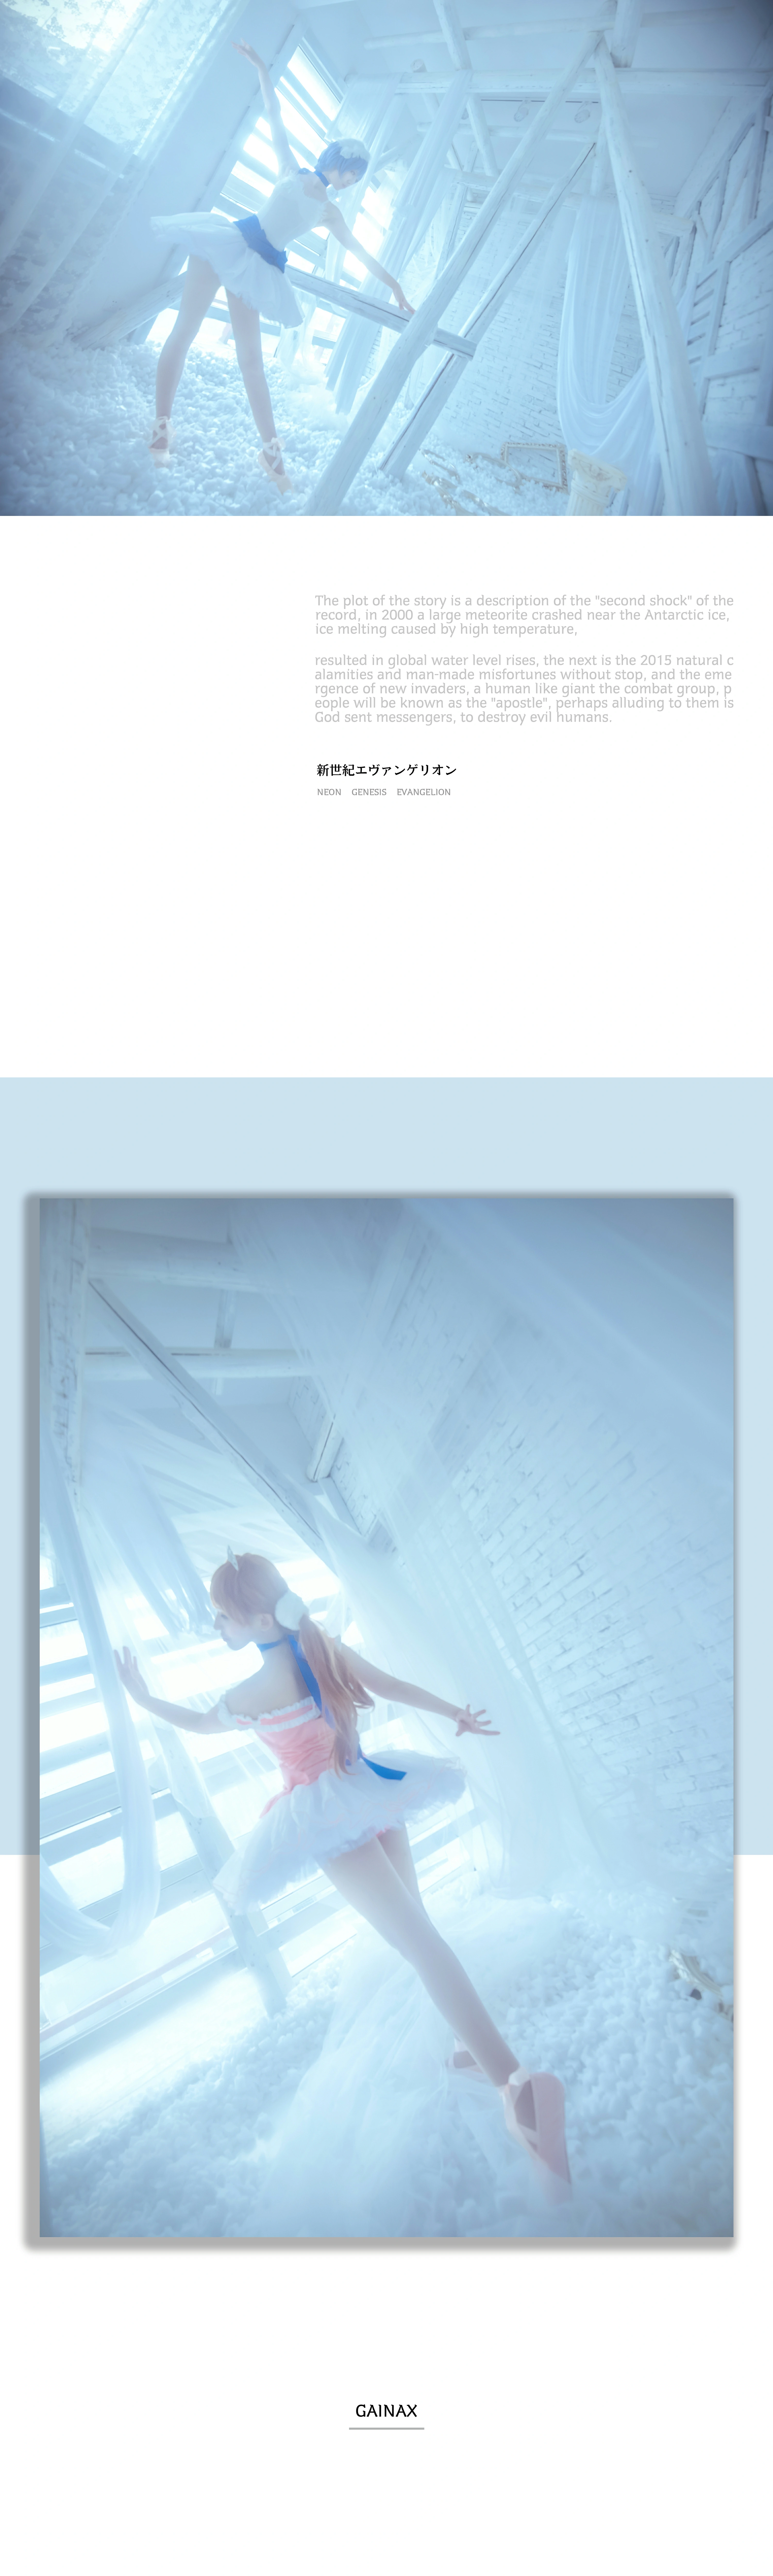 动漫网红小美女 弥音音ww 明日香芭蕾舞制服裙加白色丝袜美腿私房写真集,14(14)